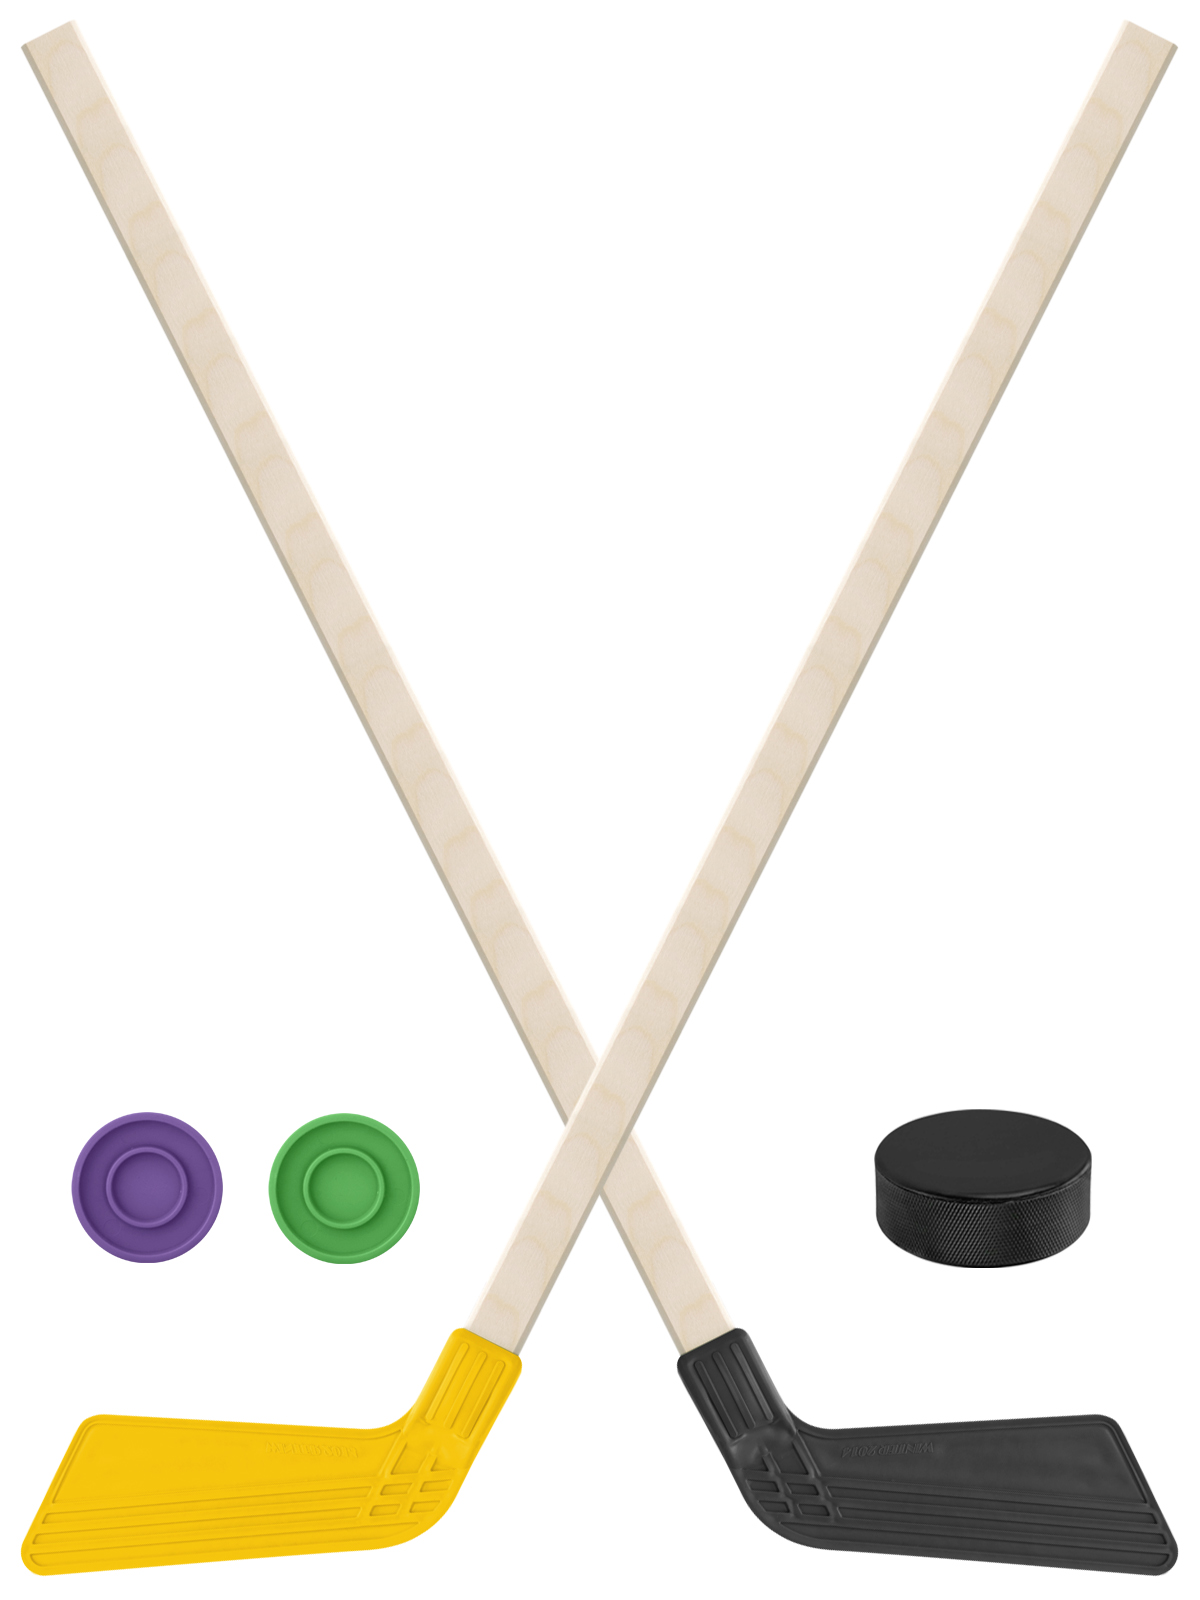 Детский хоккейный набор Задира-плюс Клюшка хоккейная 80см 2шт(жёлт,чёрн)+2шайбы+Шайба75 мм клюшка флорбольная acito moooo 33 yellow 80 round левый